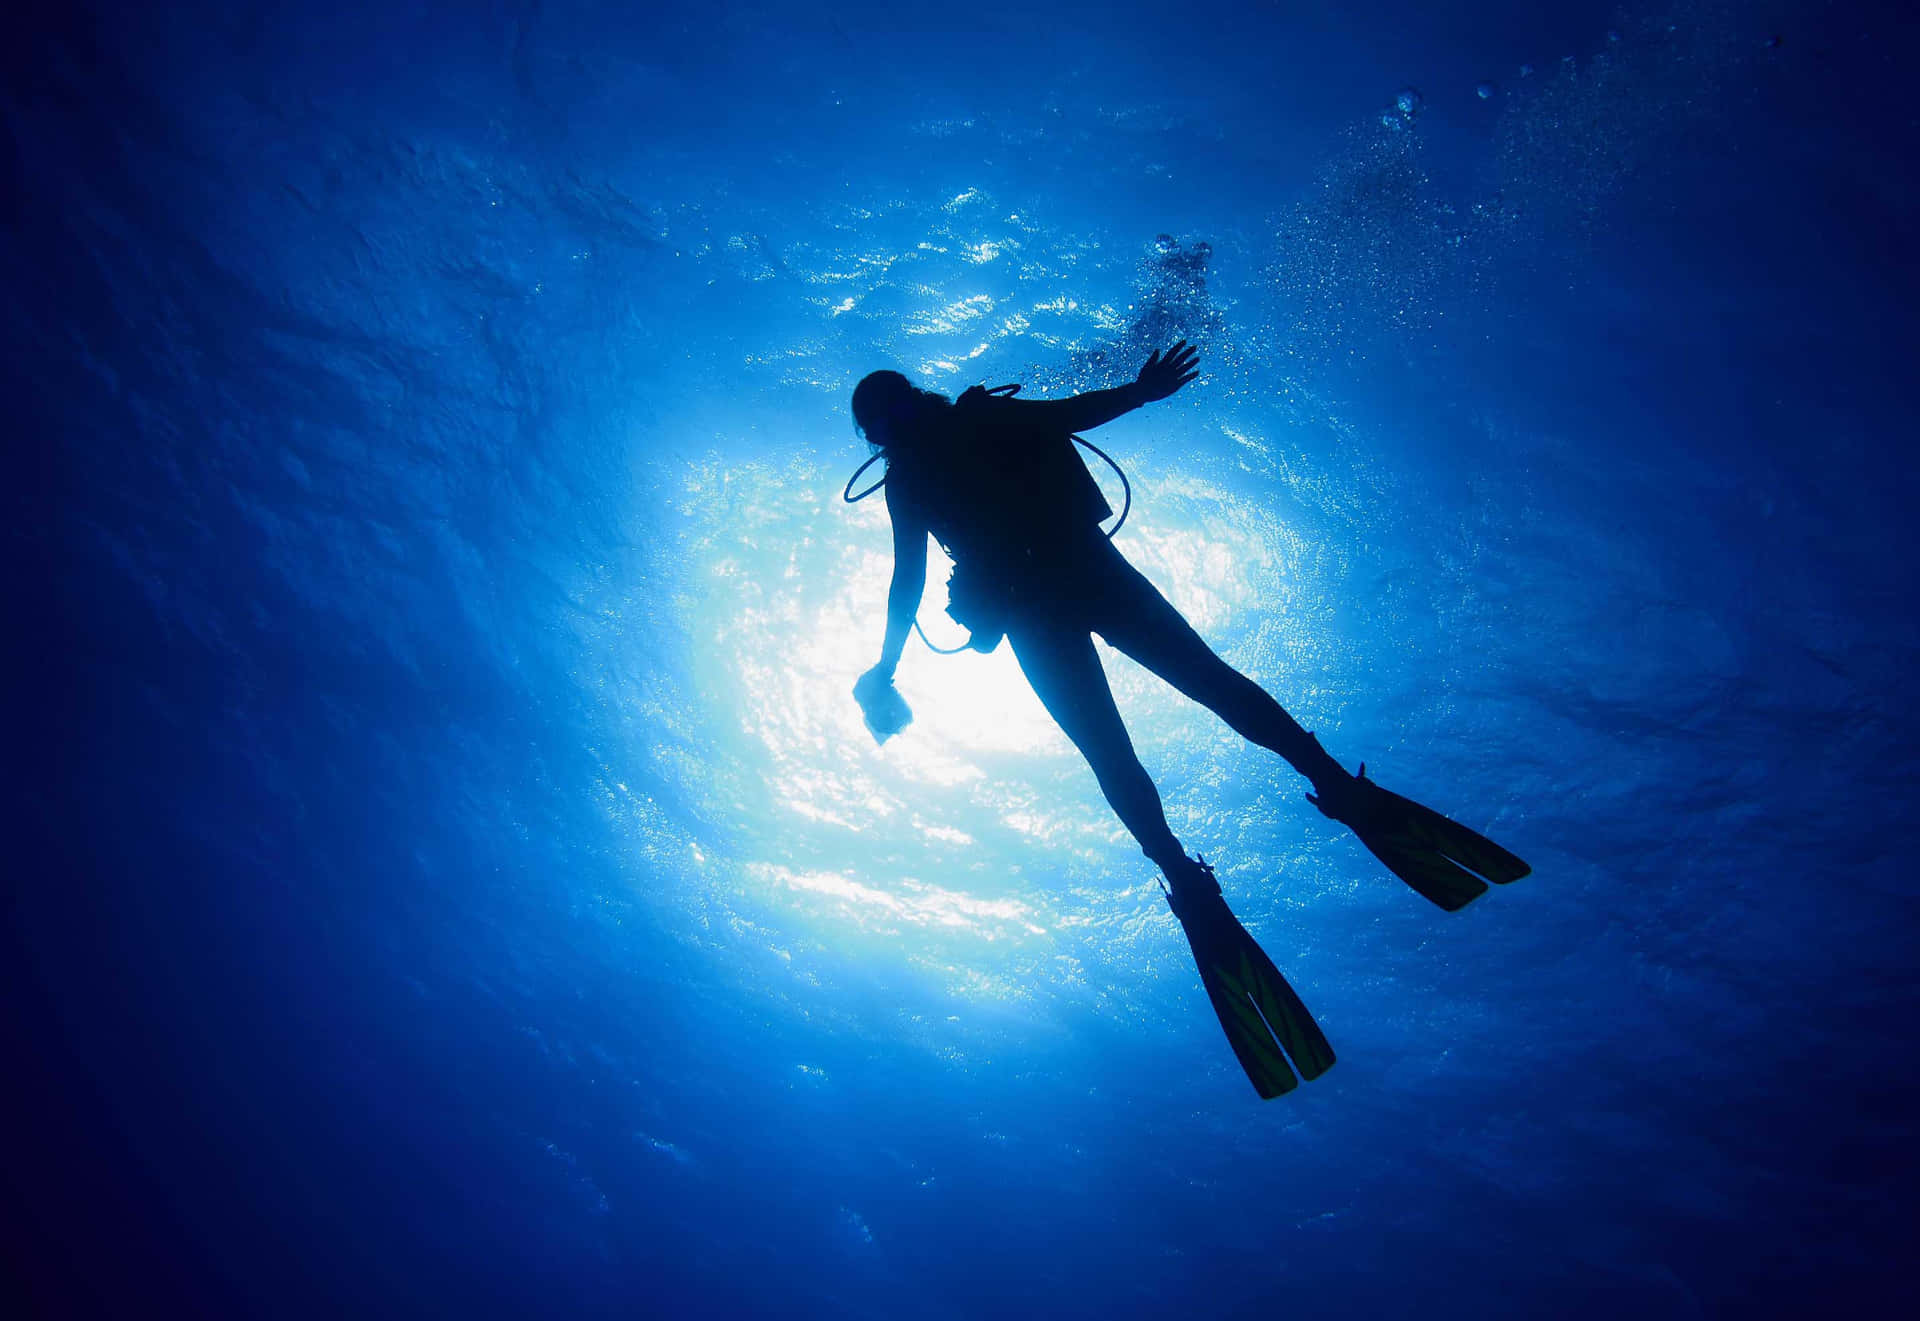 A diver dives in the blue, pristine sea